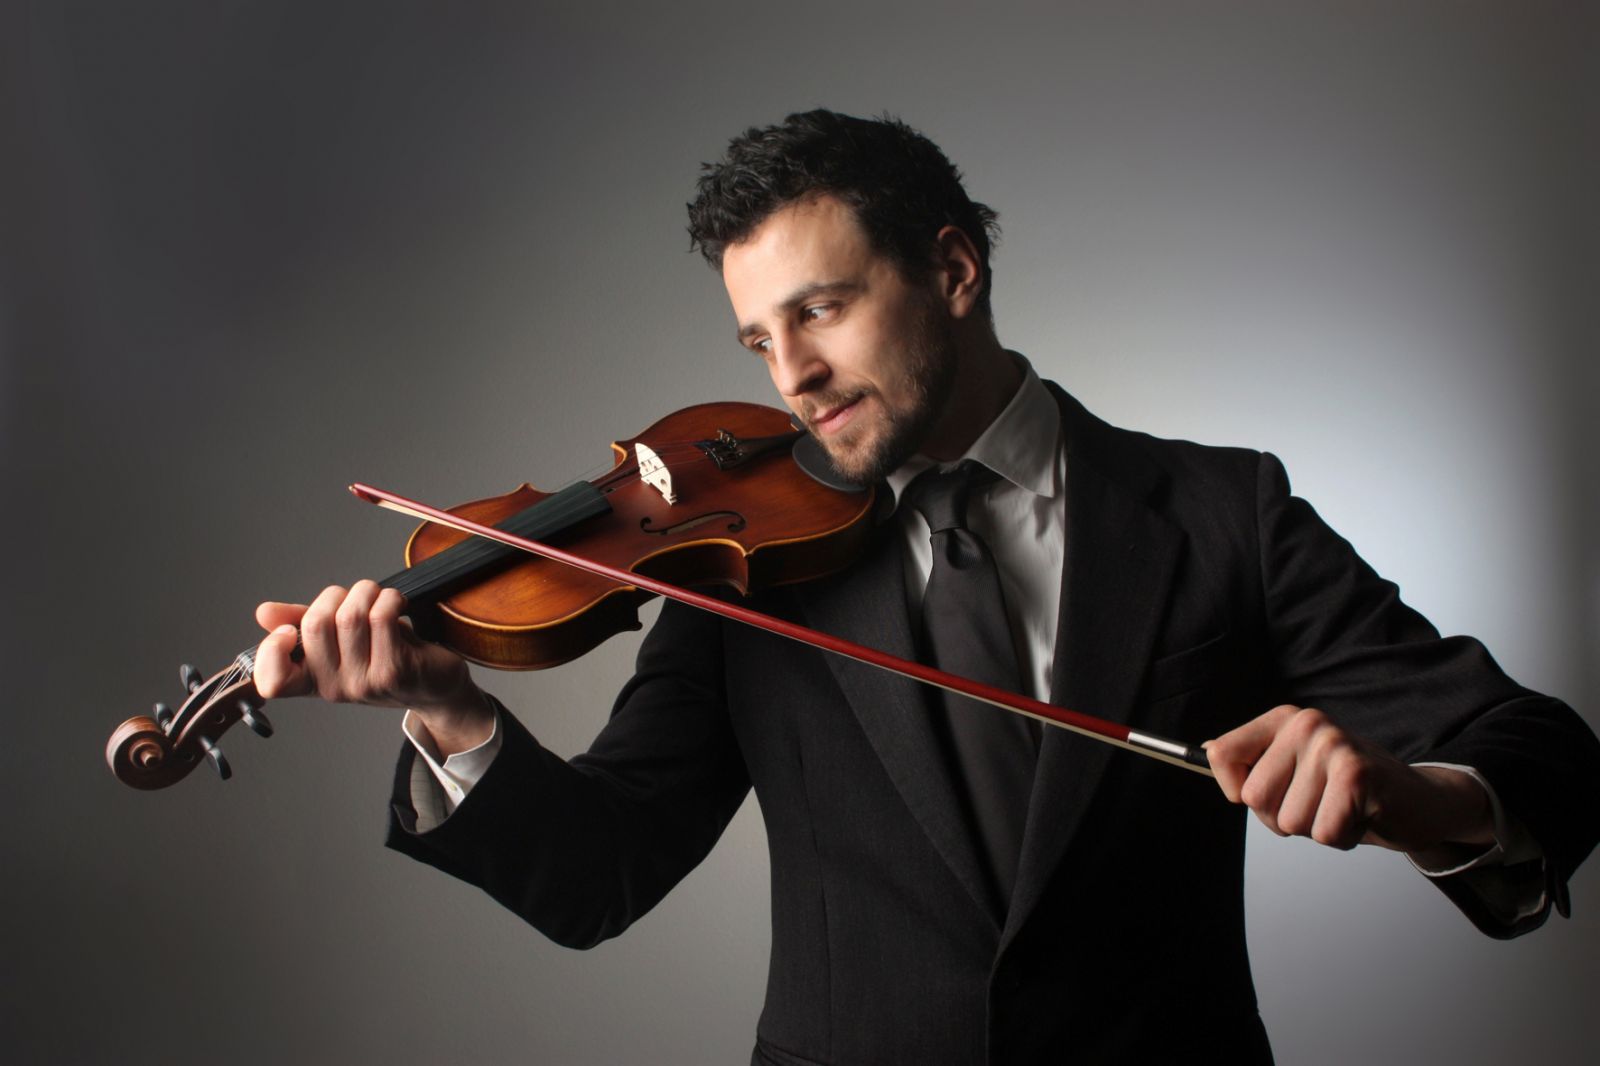 Học Violin Đơn giản và Dễ dàng với 4 bước cơ bản!